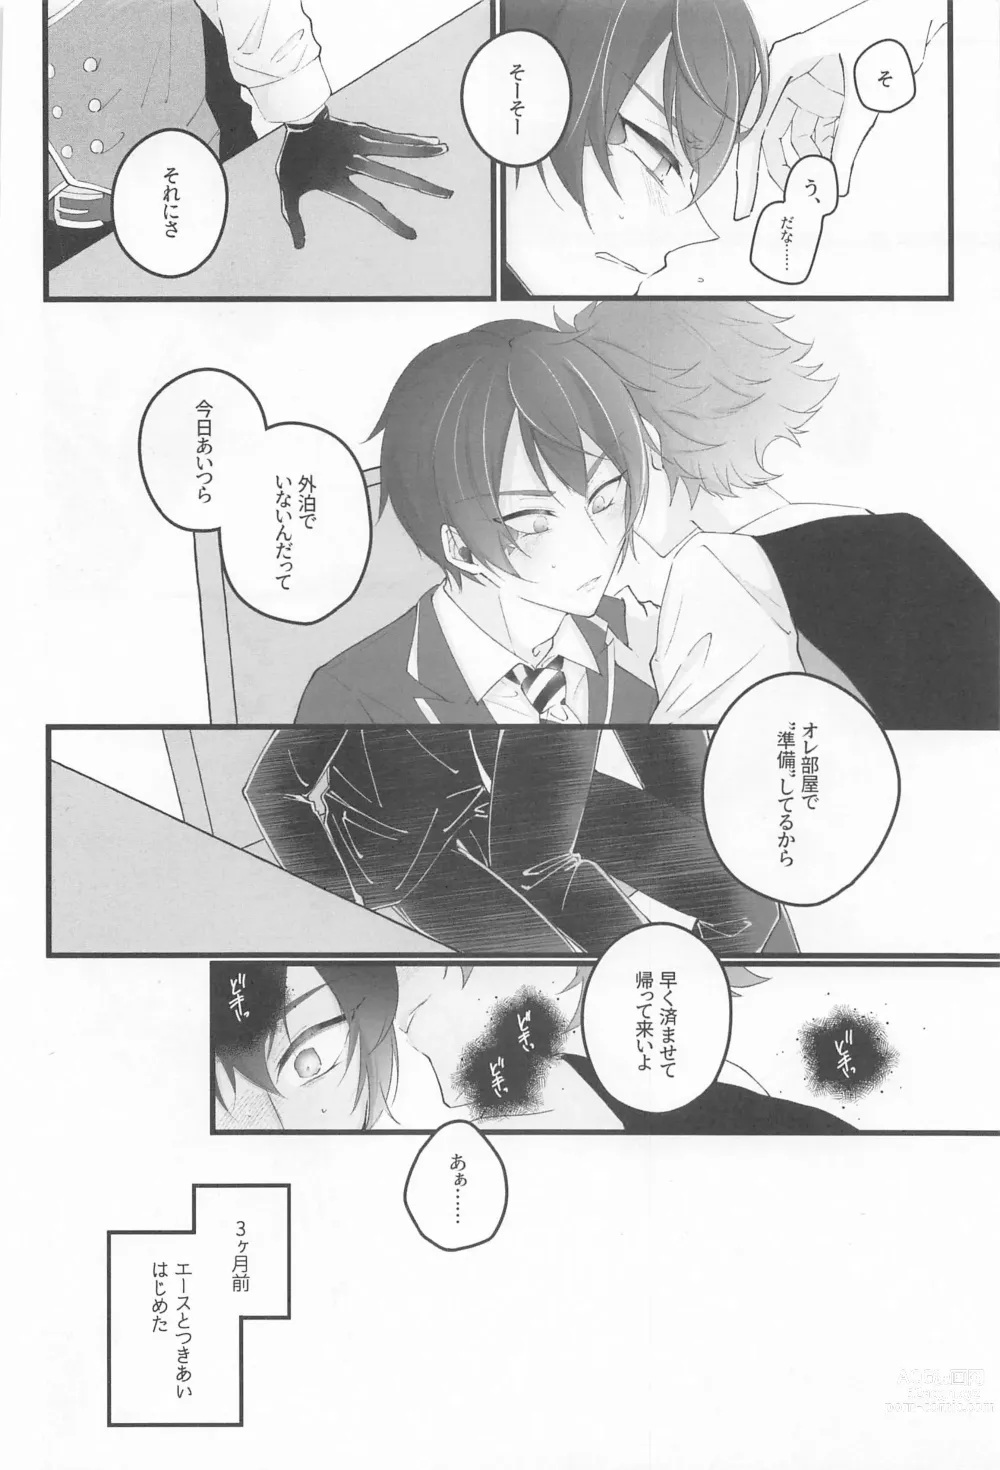 Page 7 of doujinshi No use crying.